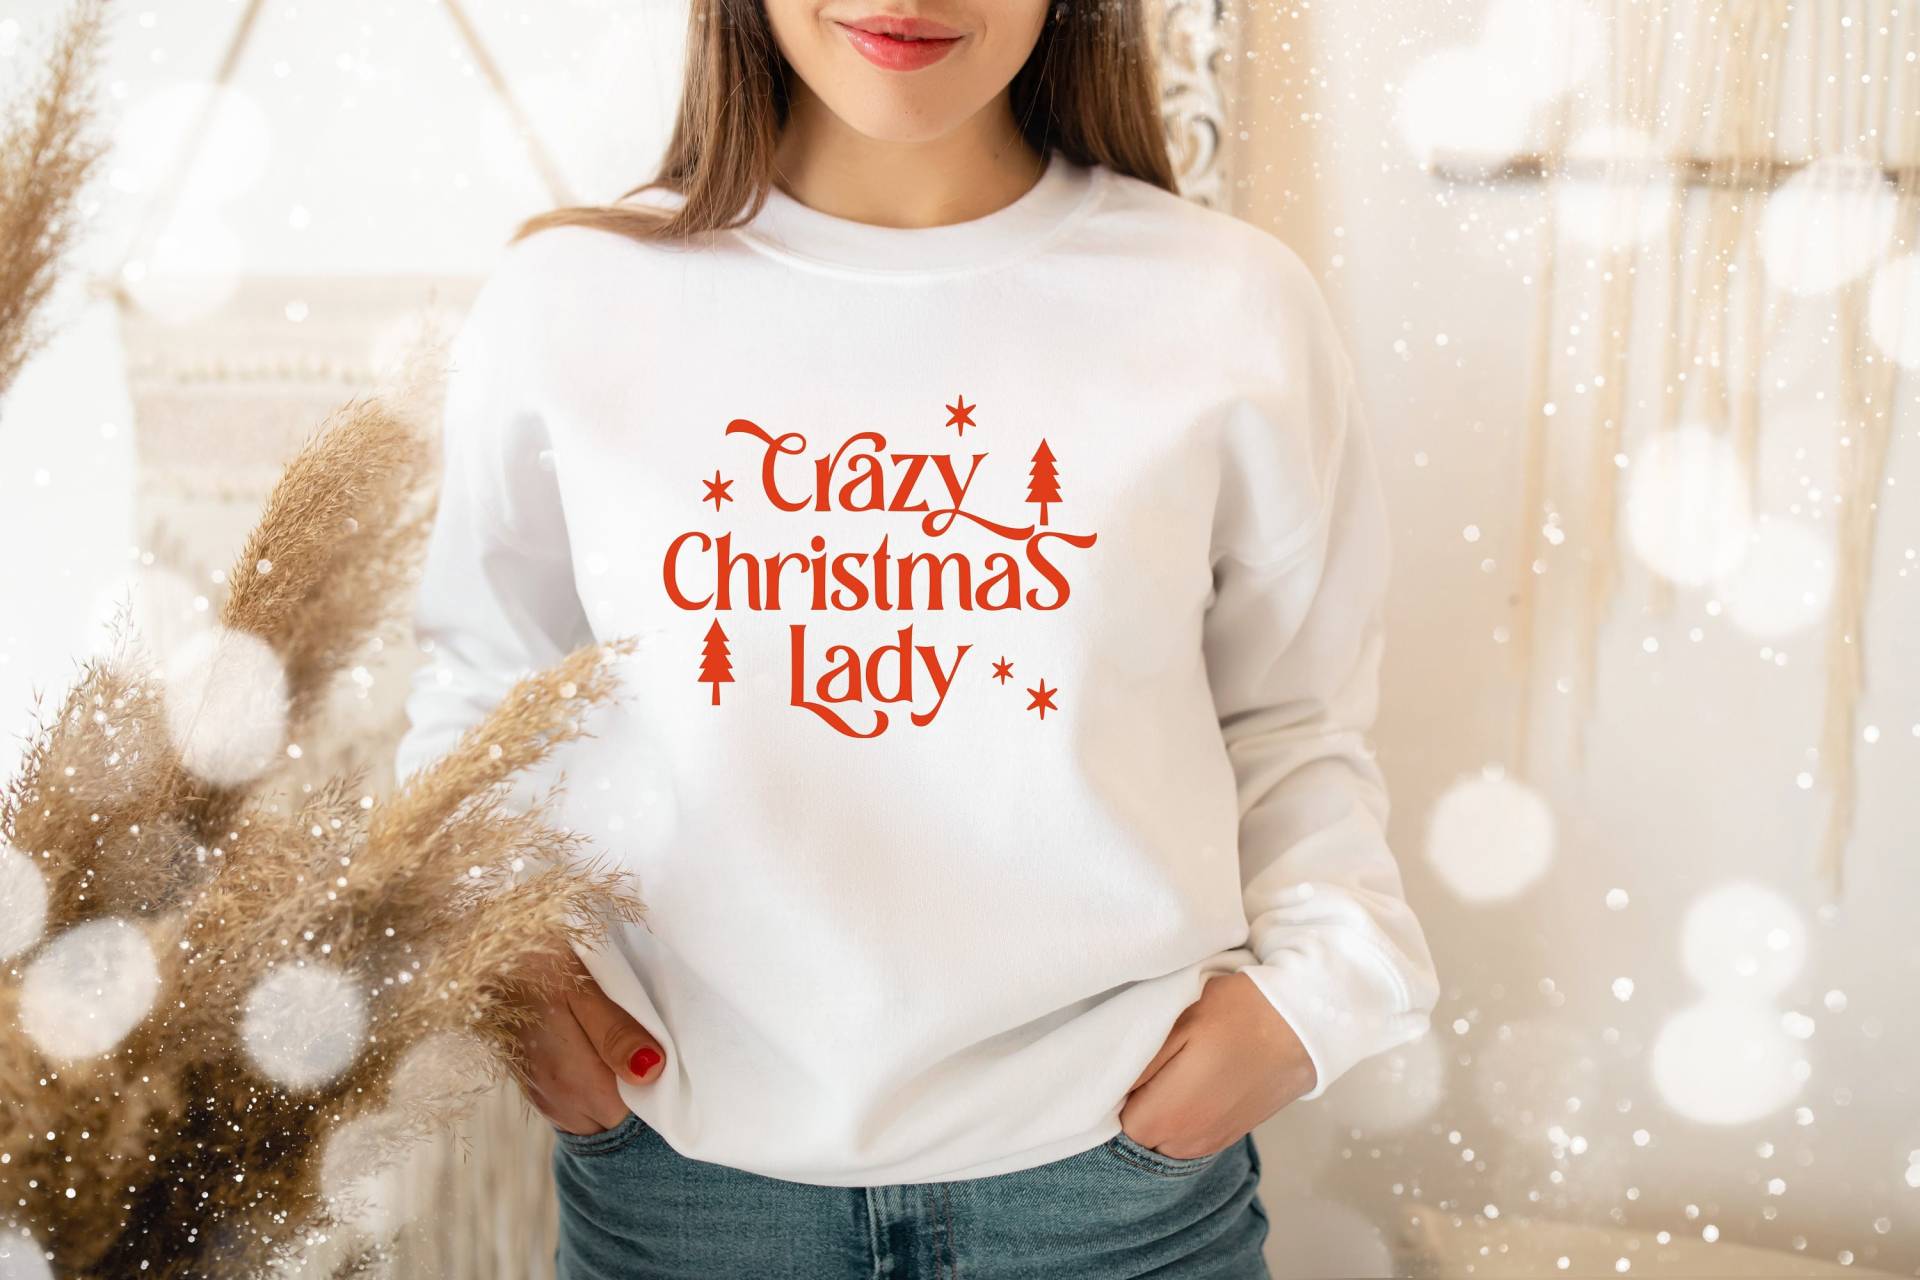 Crazy Christmas Lady Sweatshirt, Frauen Weihnachts Weihnachten Merry Sweatshirt von GraphicTeePoint